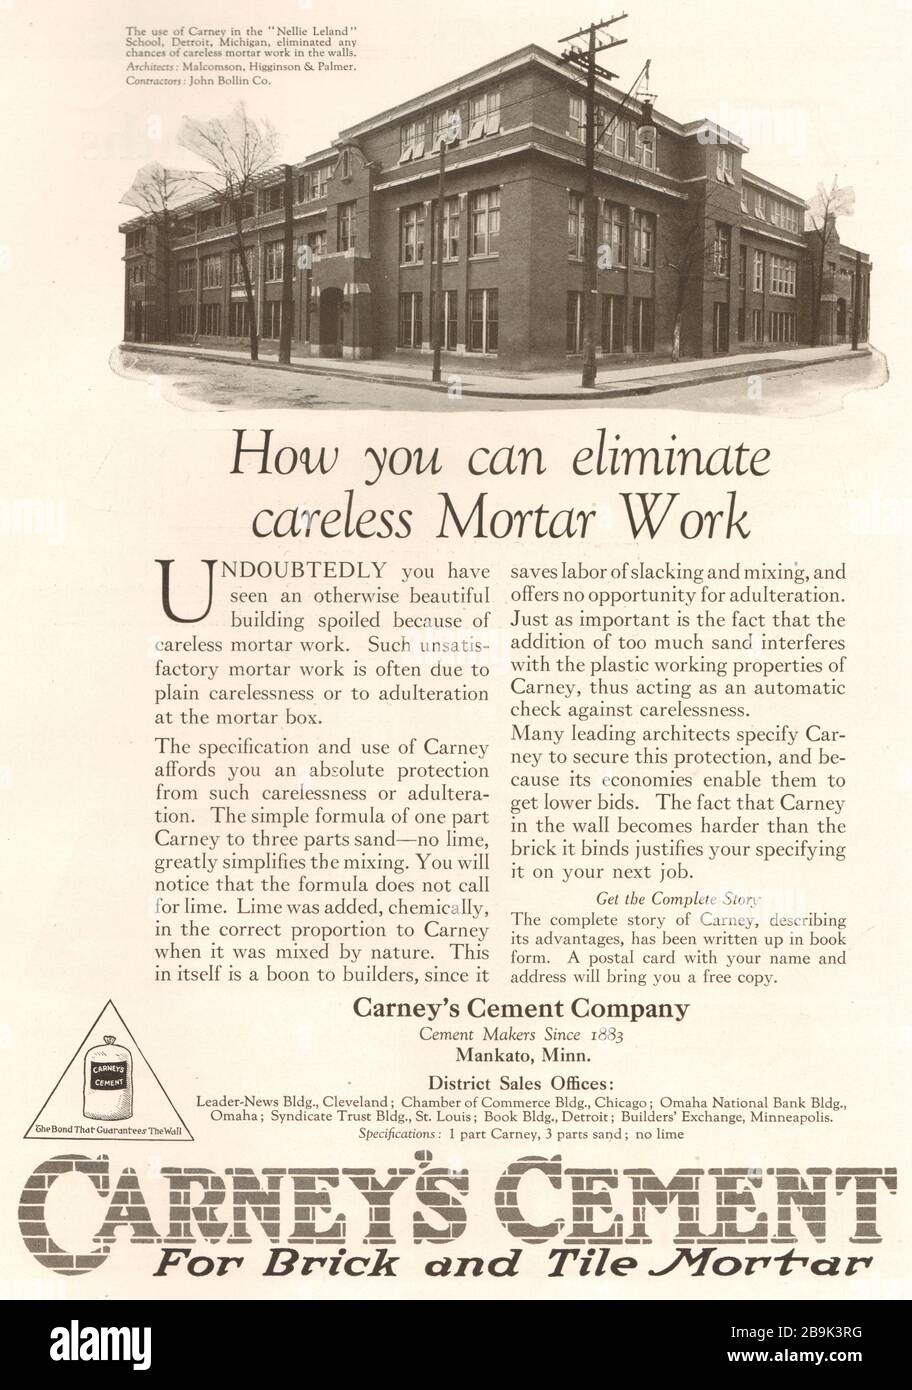 Nellie Leland School, Detroit, Michigan. Cemento di Carney per mattone e mortaio di mattone. Carney's Cement Company, Mankato, Minnesota (1922) Foto Stock